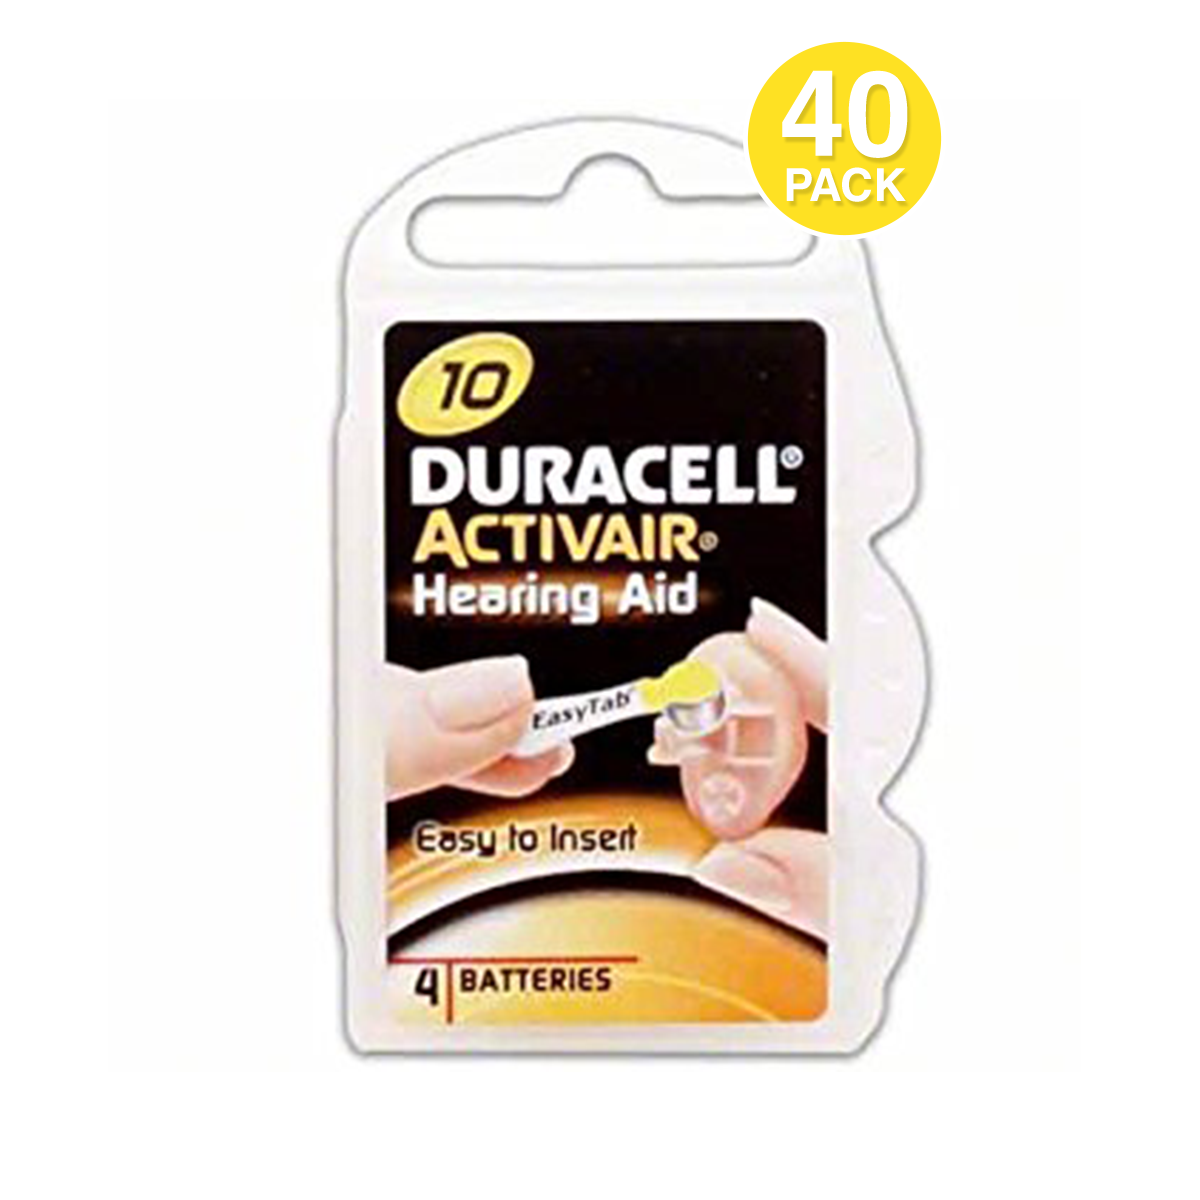 24x Duracell ActivAirHörgerätebatterienKnopfzellePR48Typ 13310mAh 